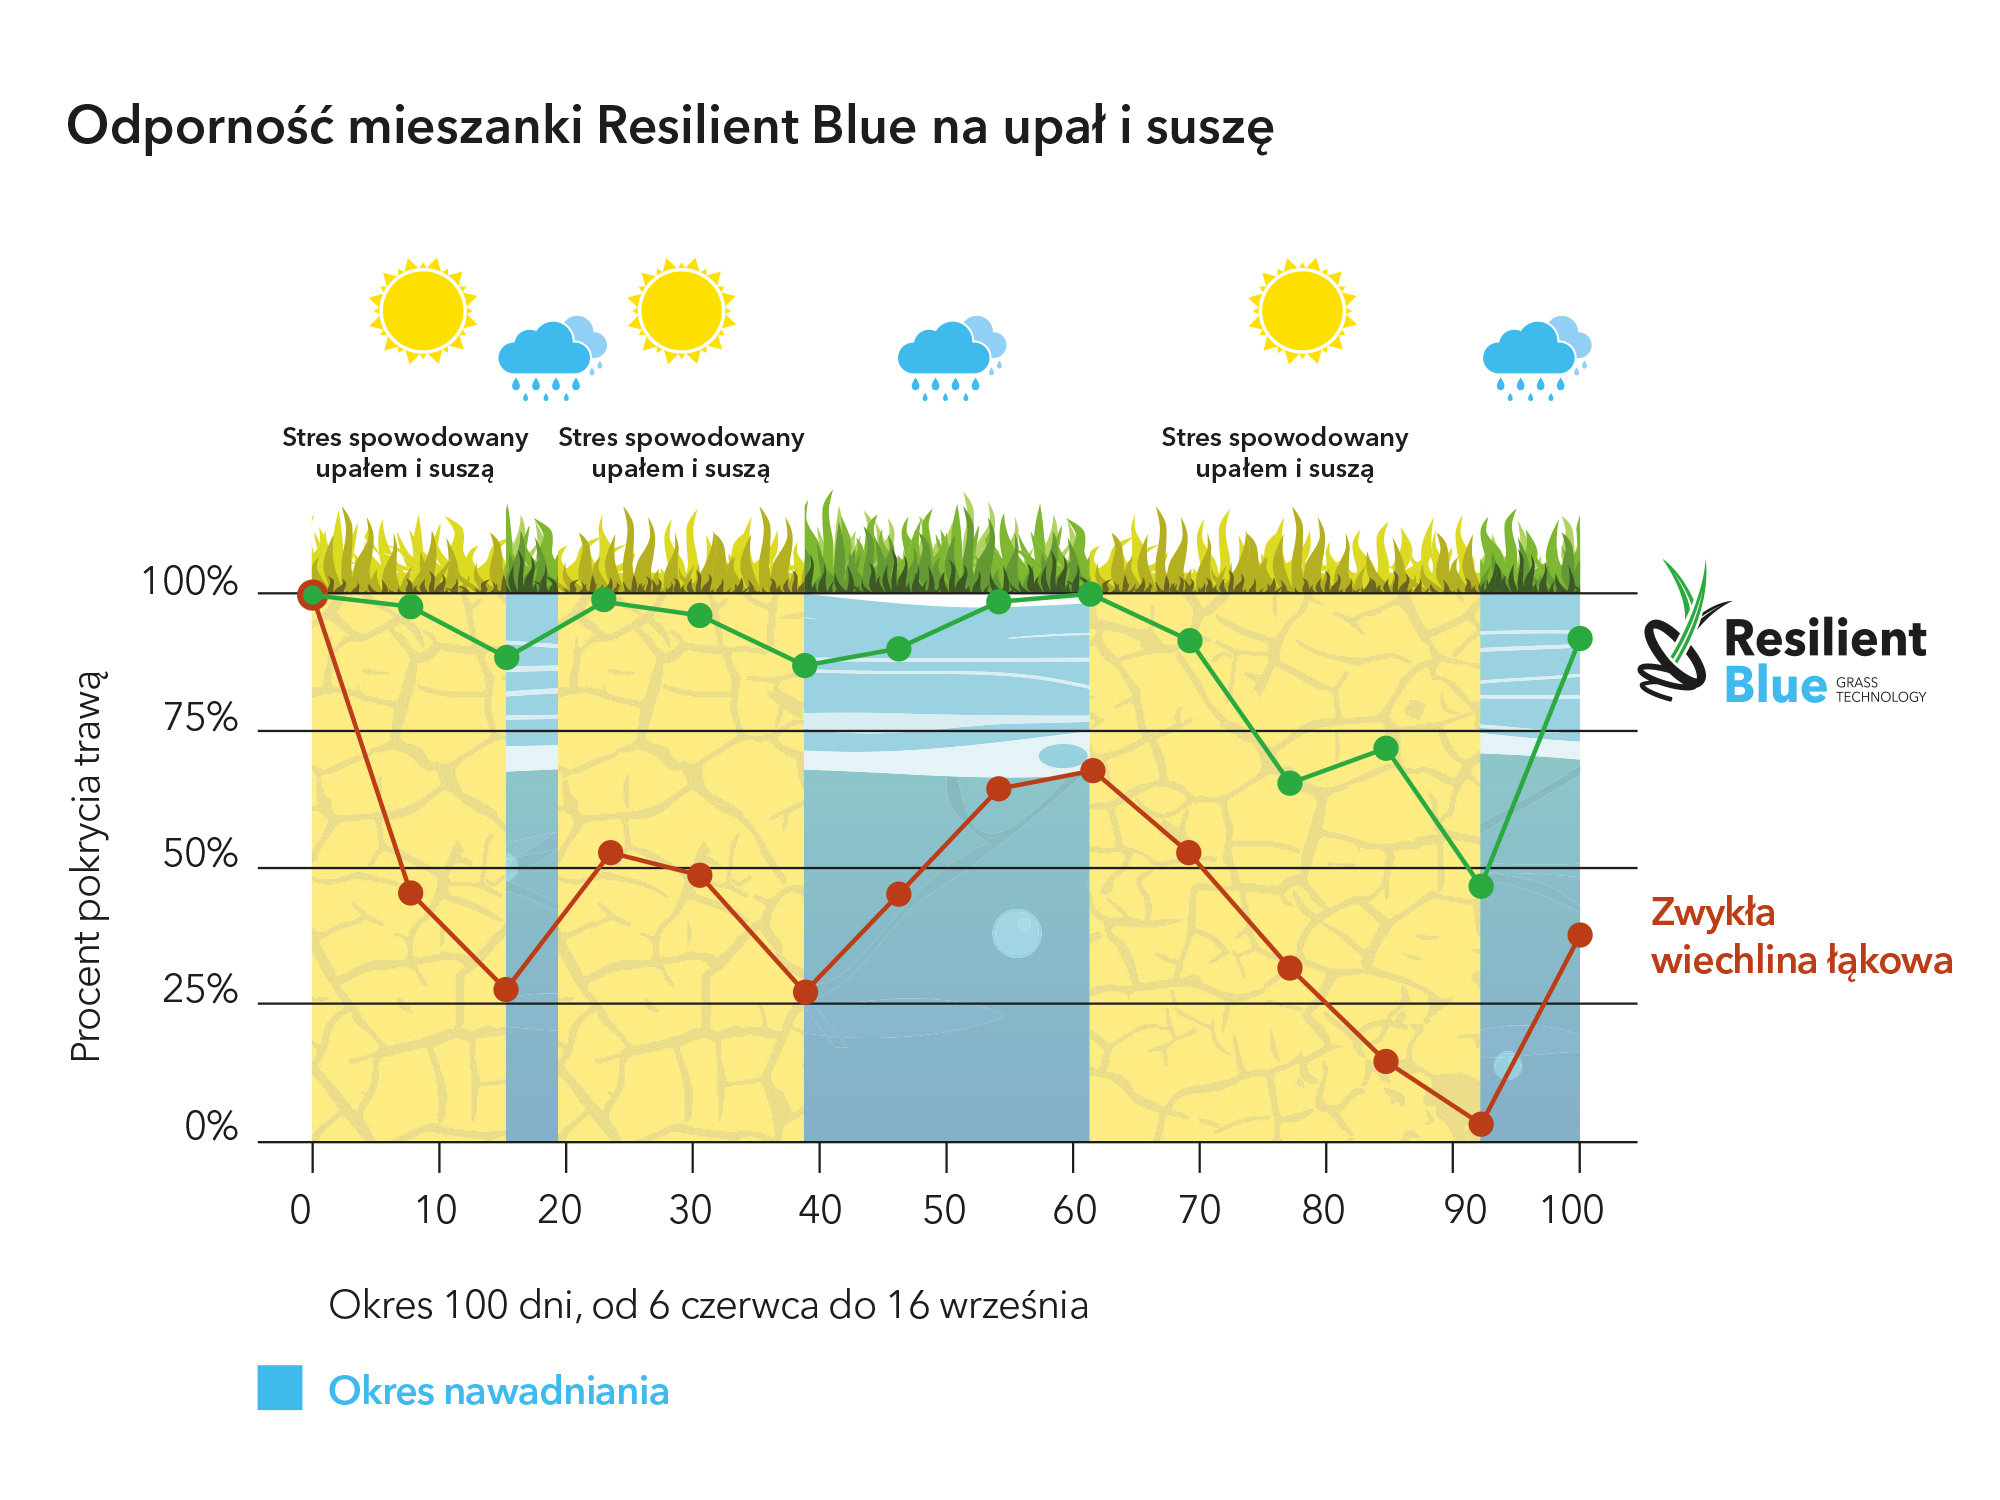 Odporność Resilient Blue na upał i suszę